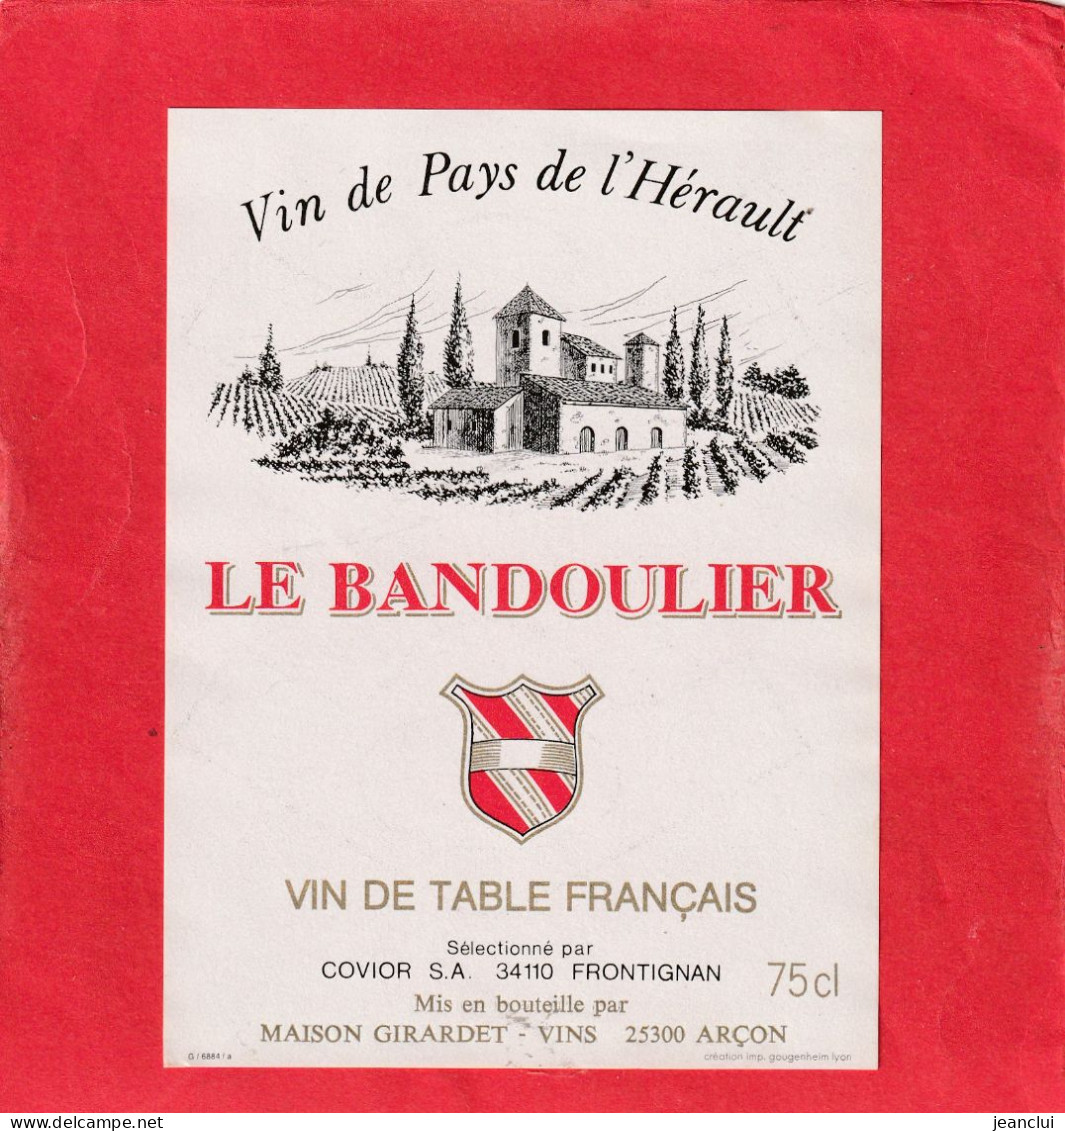 VIN DE PAYS DE L'HERAULT  "  LE BANDOULIER  "  COVIOR S.A. FRONTIGNAN - Languedoc-Roussillon